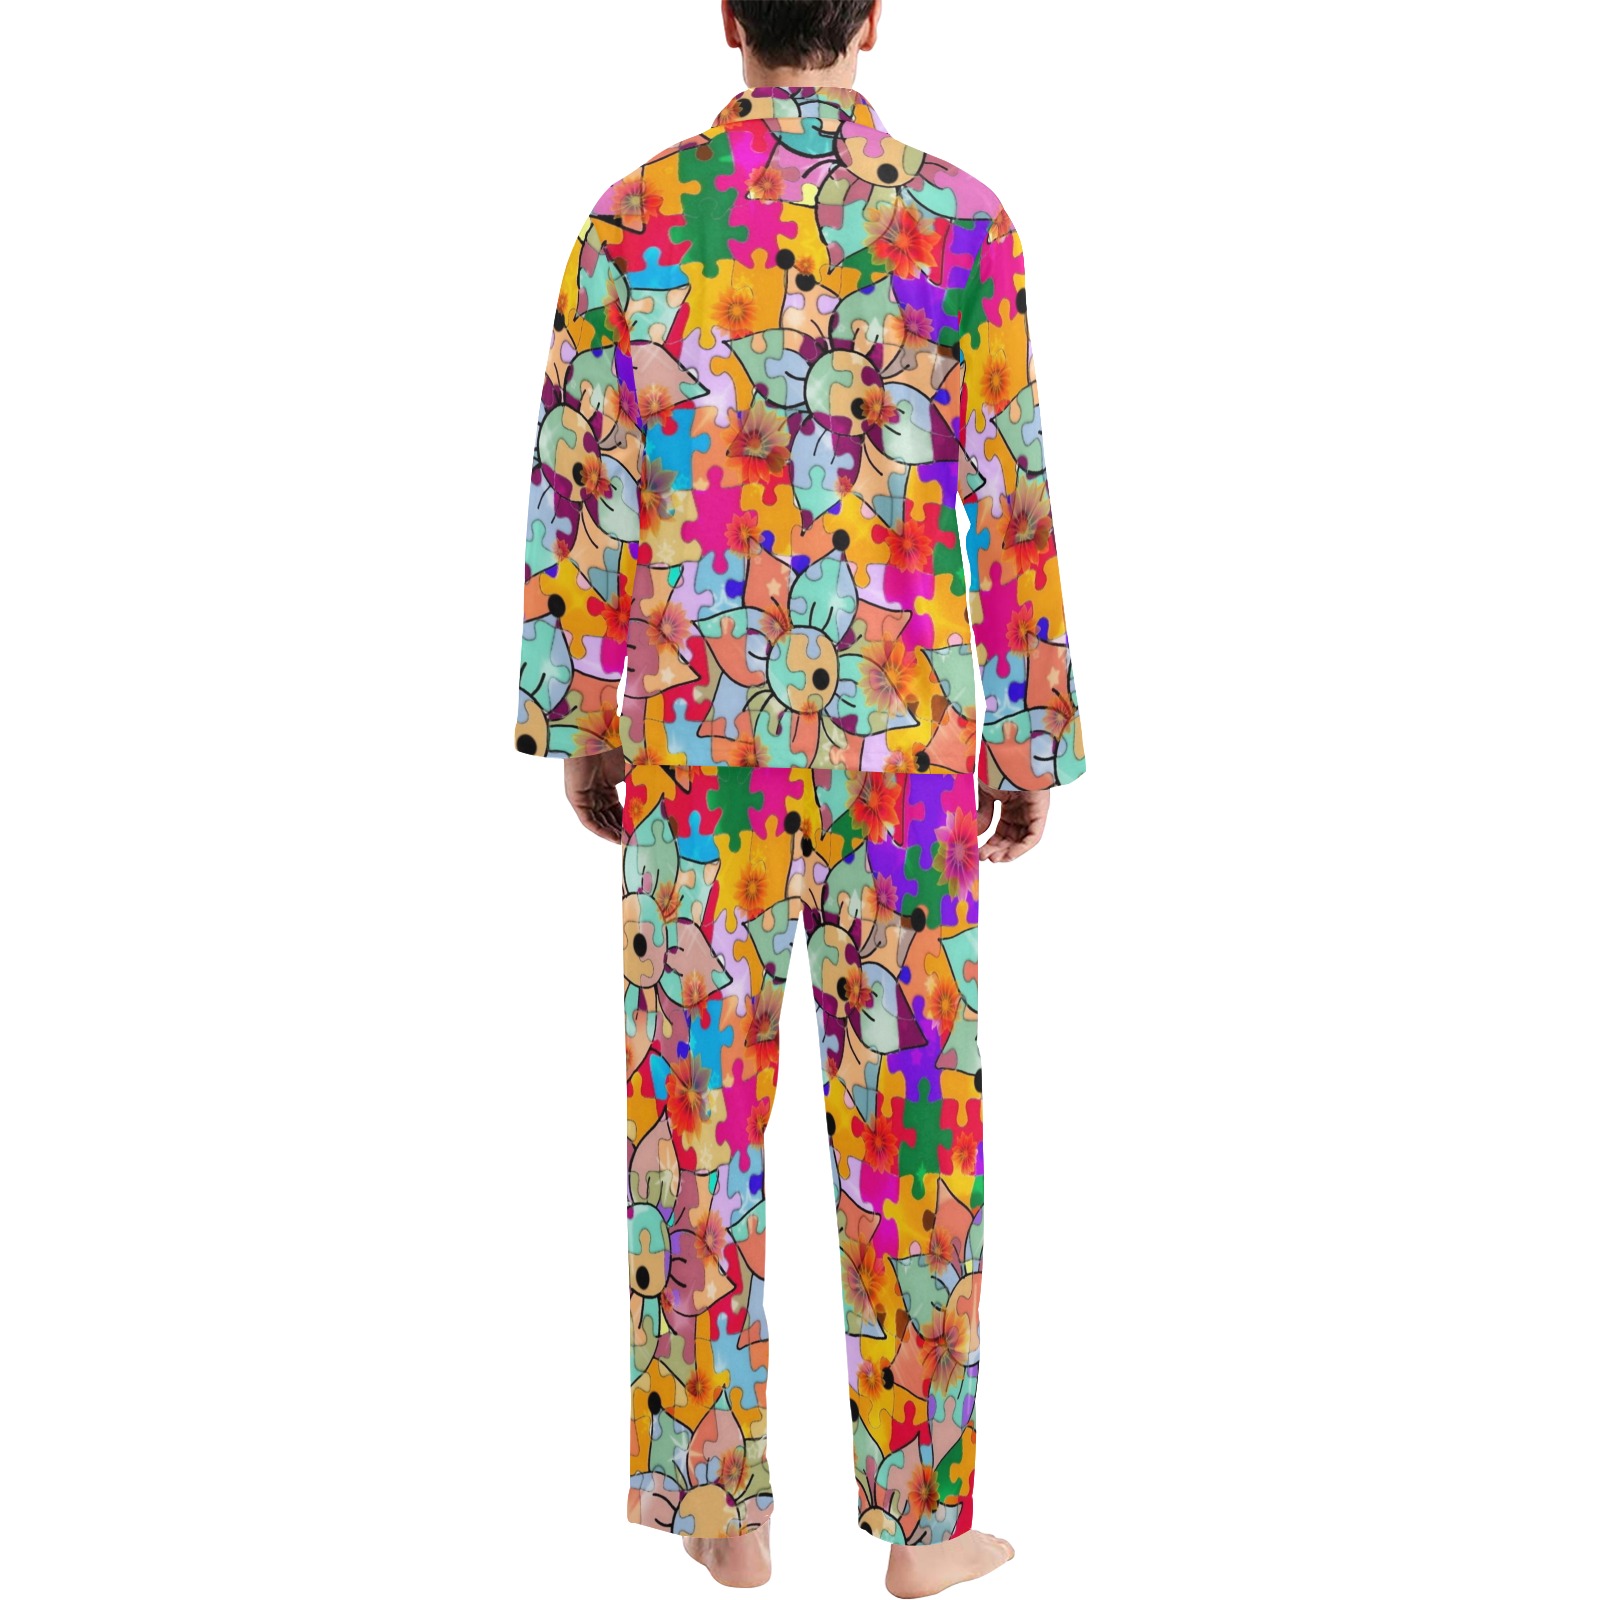 Flower Power 70er by Nico Bielow Men's V-Neck Long Pajama Set